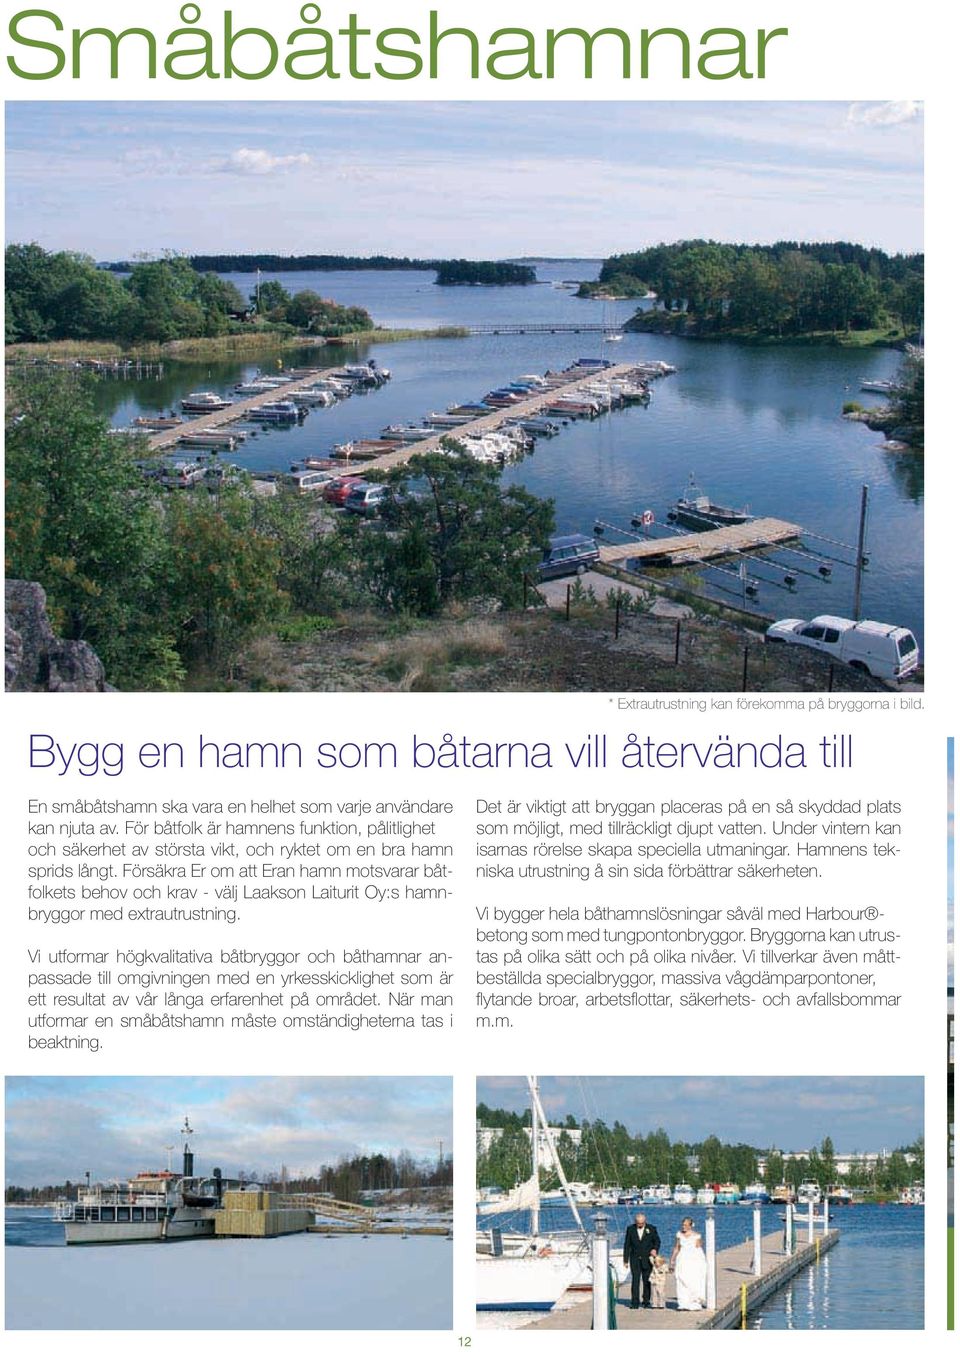 Försäkra Er om att Eran hamn motsvarar båtfolkets behov och krav - välj Laakson Laiturit Oy:s hamnbryggor med extrautrustning.